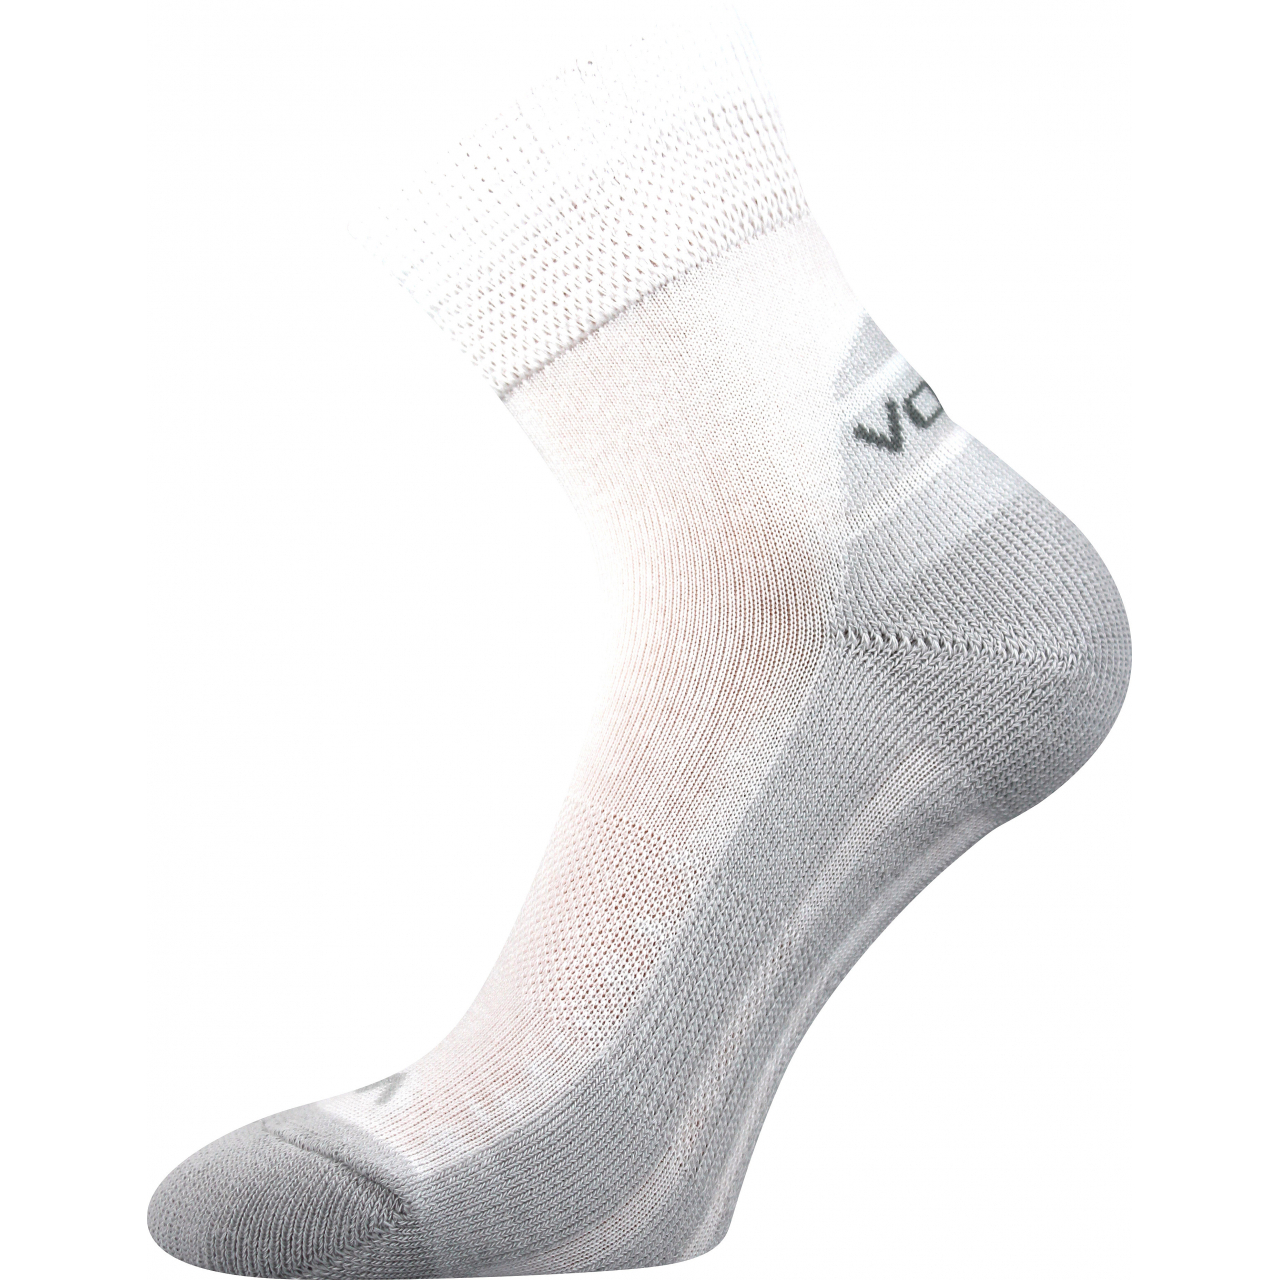 Ponožky sportovní Voxx Oliver - bílé-šedé, 43-46